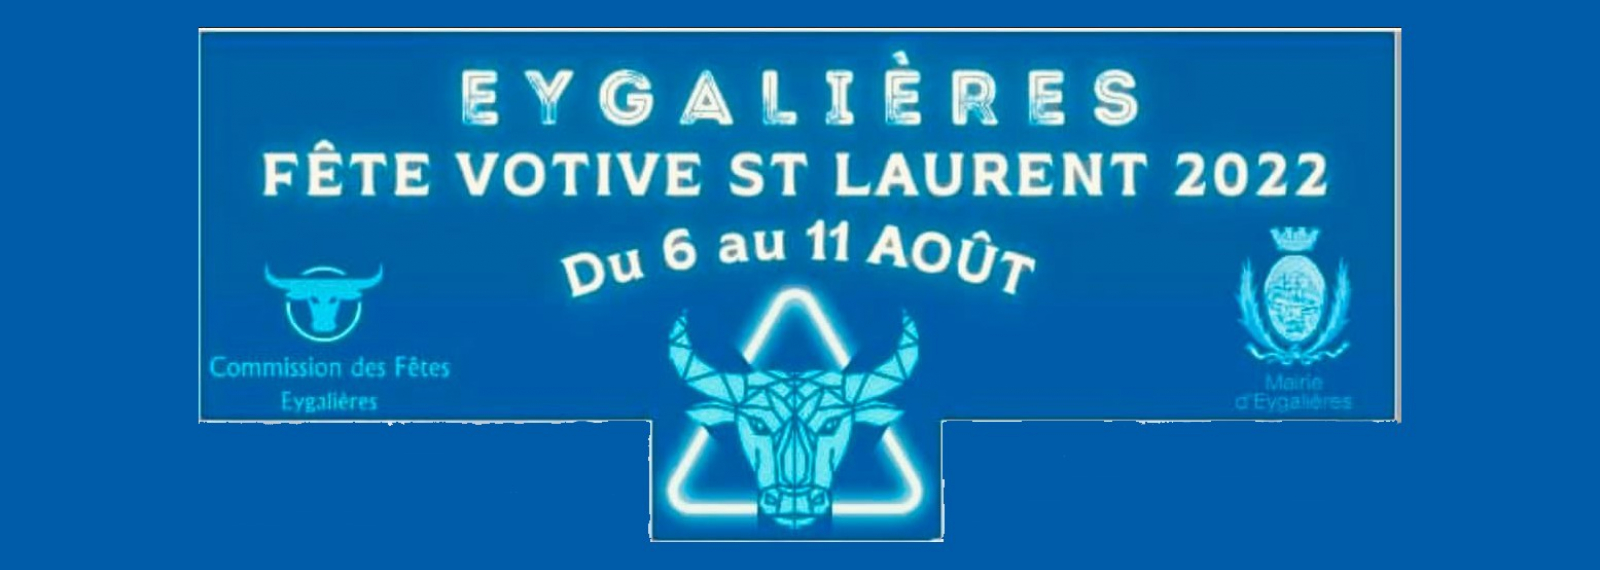 Fêtes Votives Saint-Laurent 2022